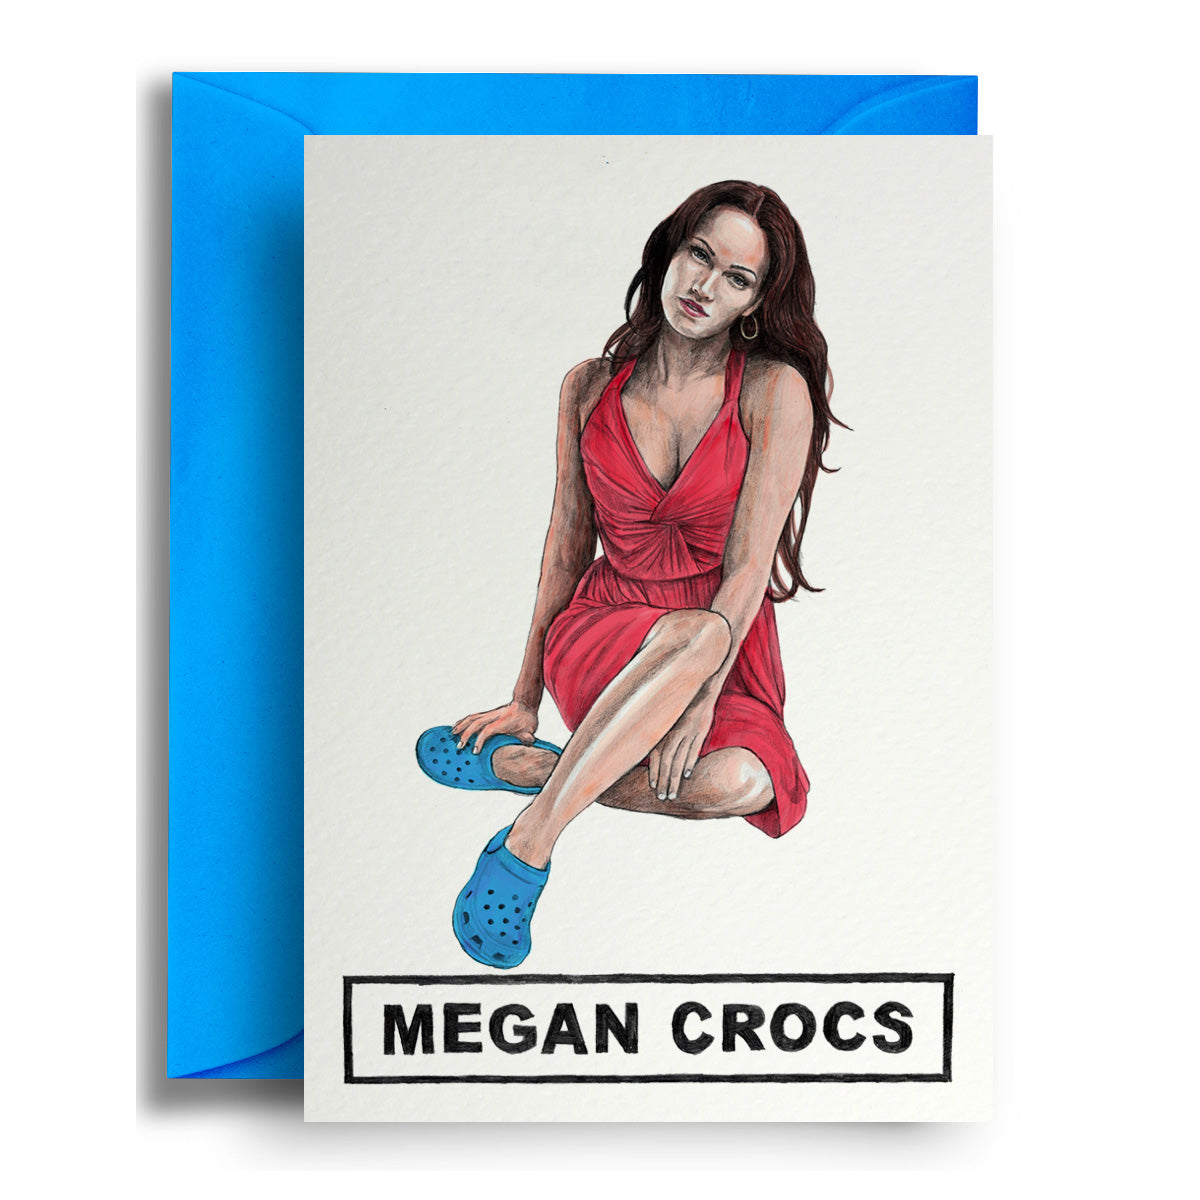 Megan Crocs - Greetings Card